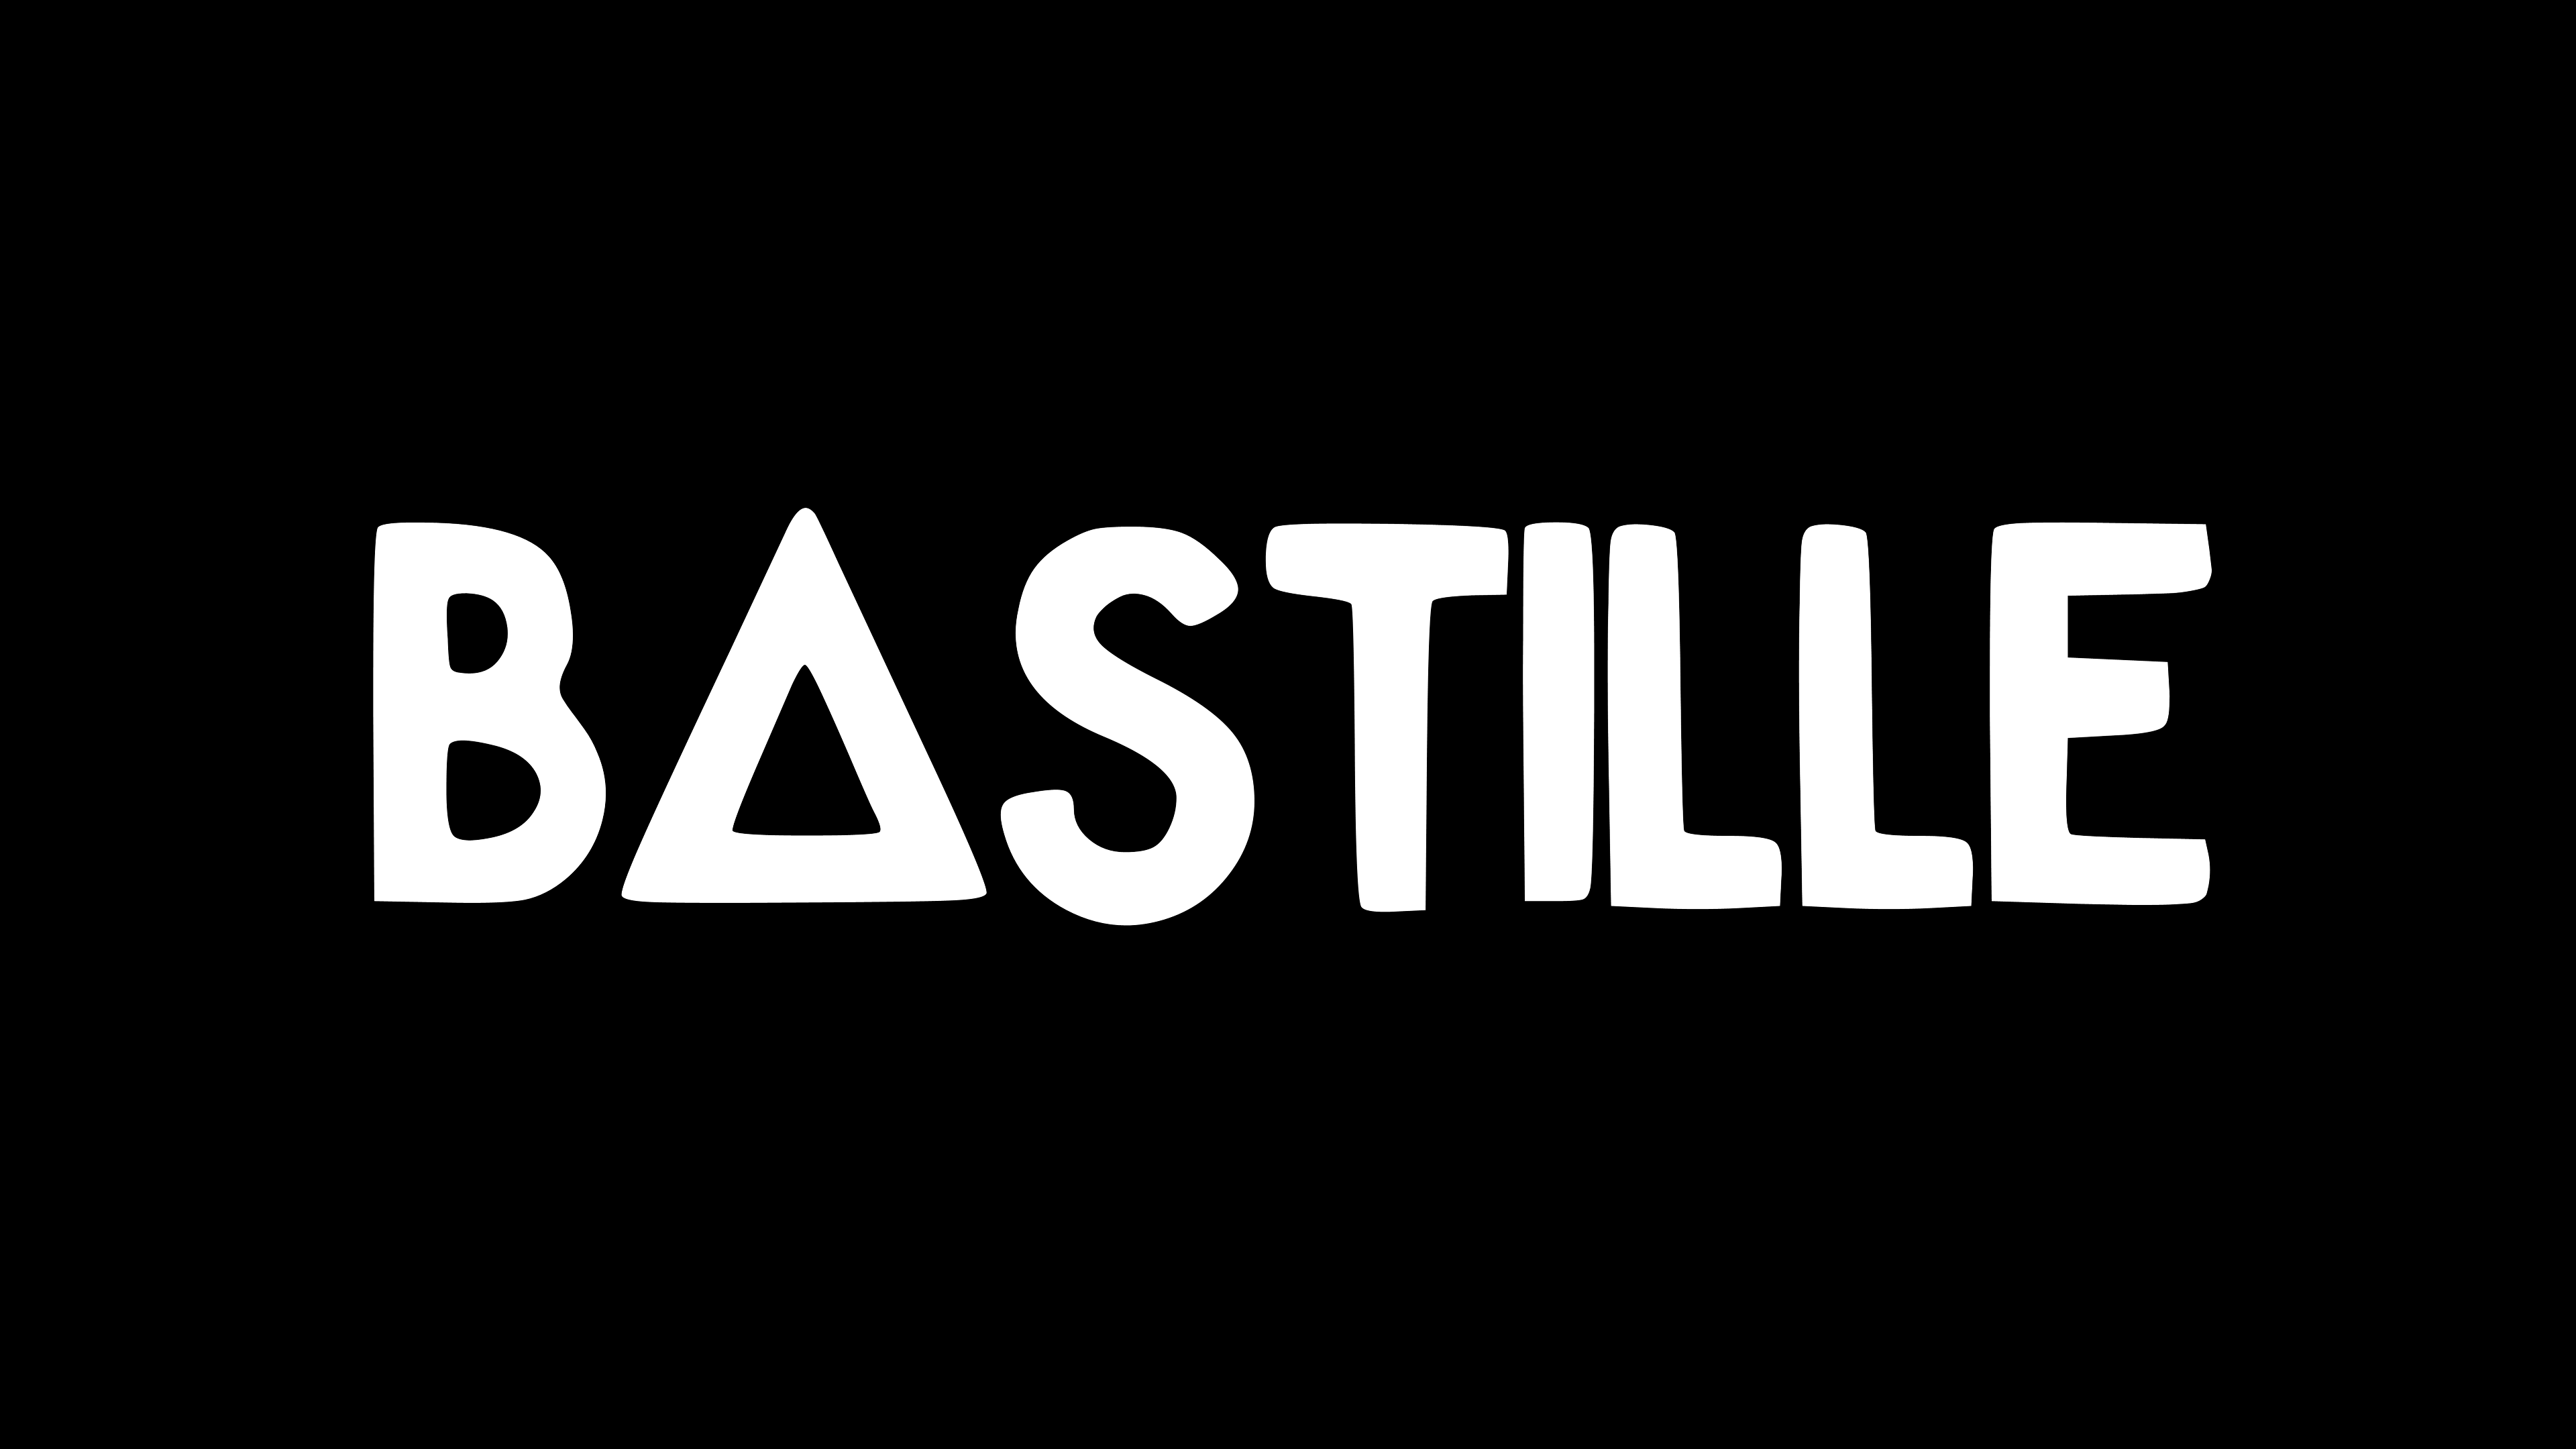 Bastille HD Wallpaper